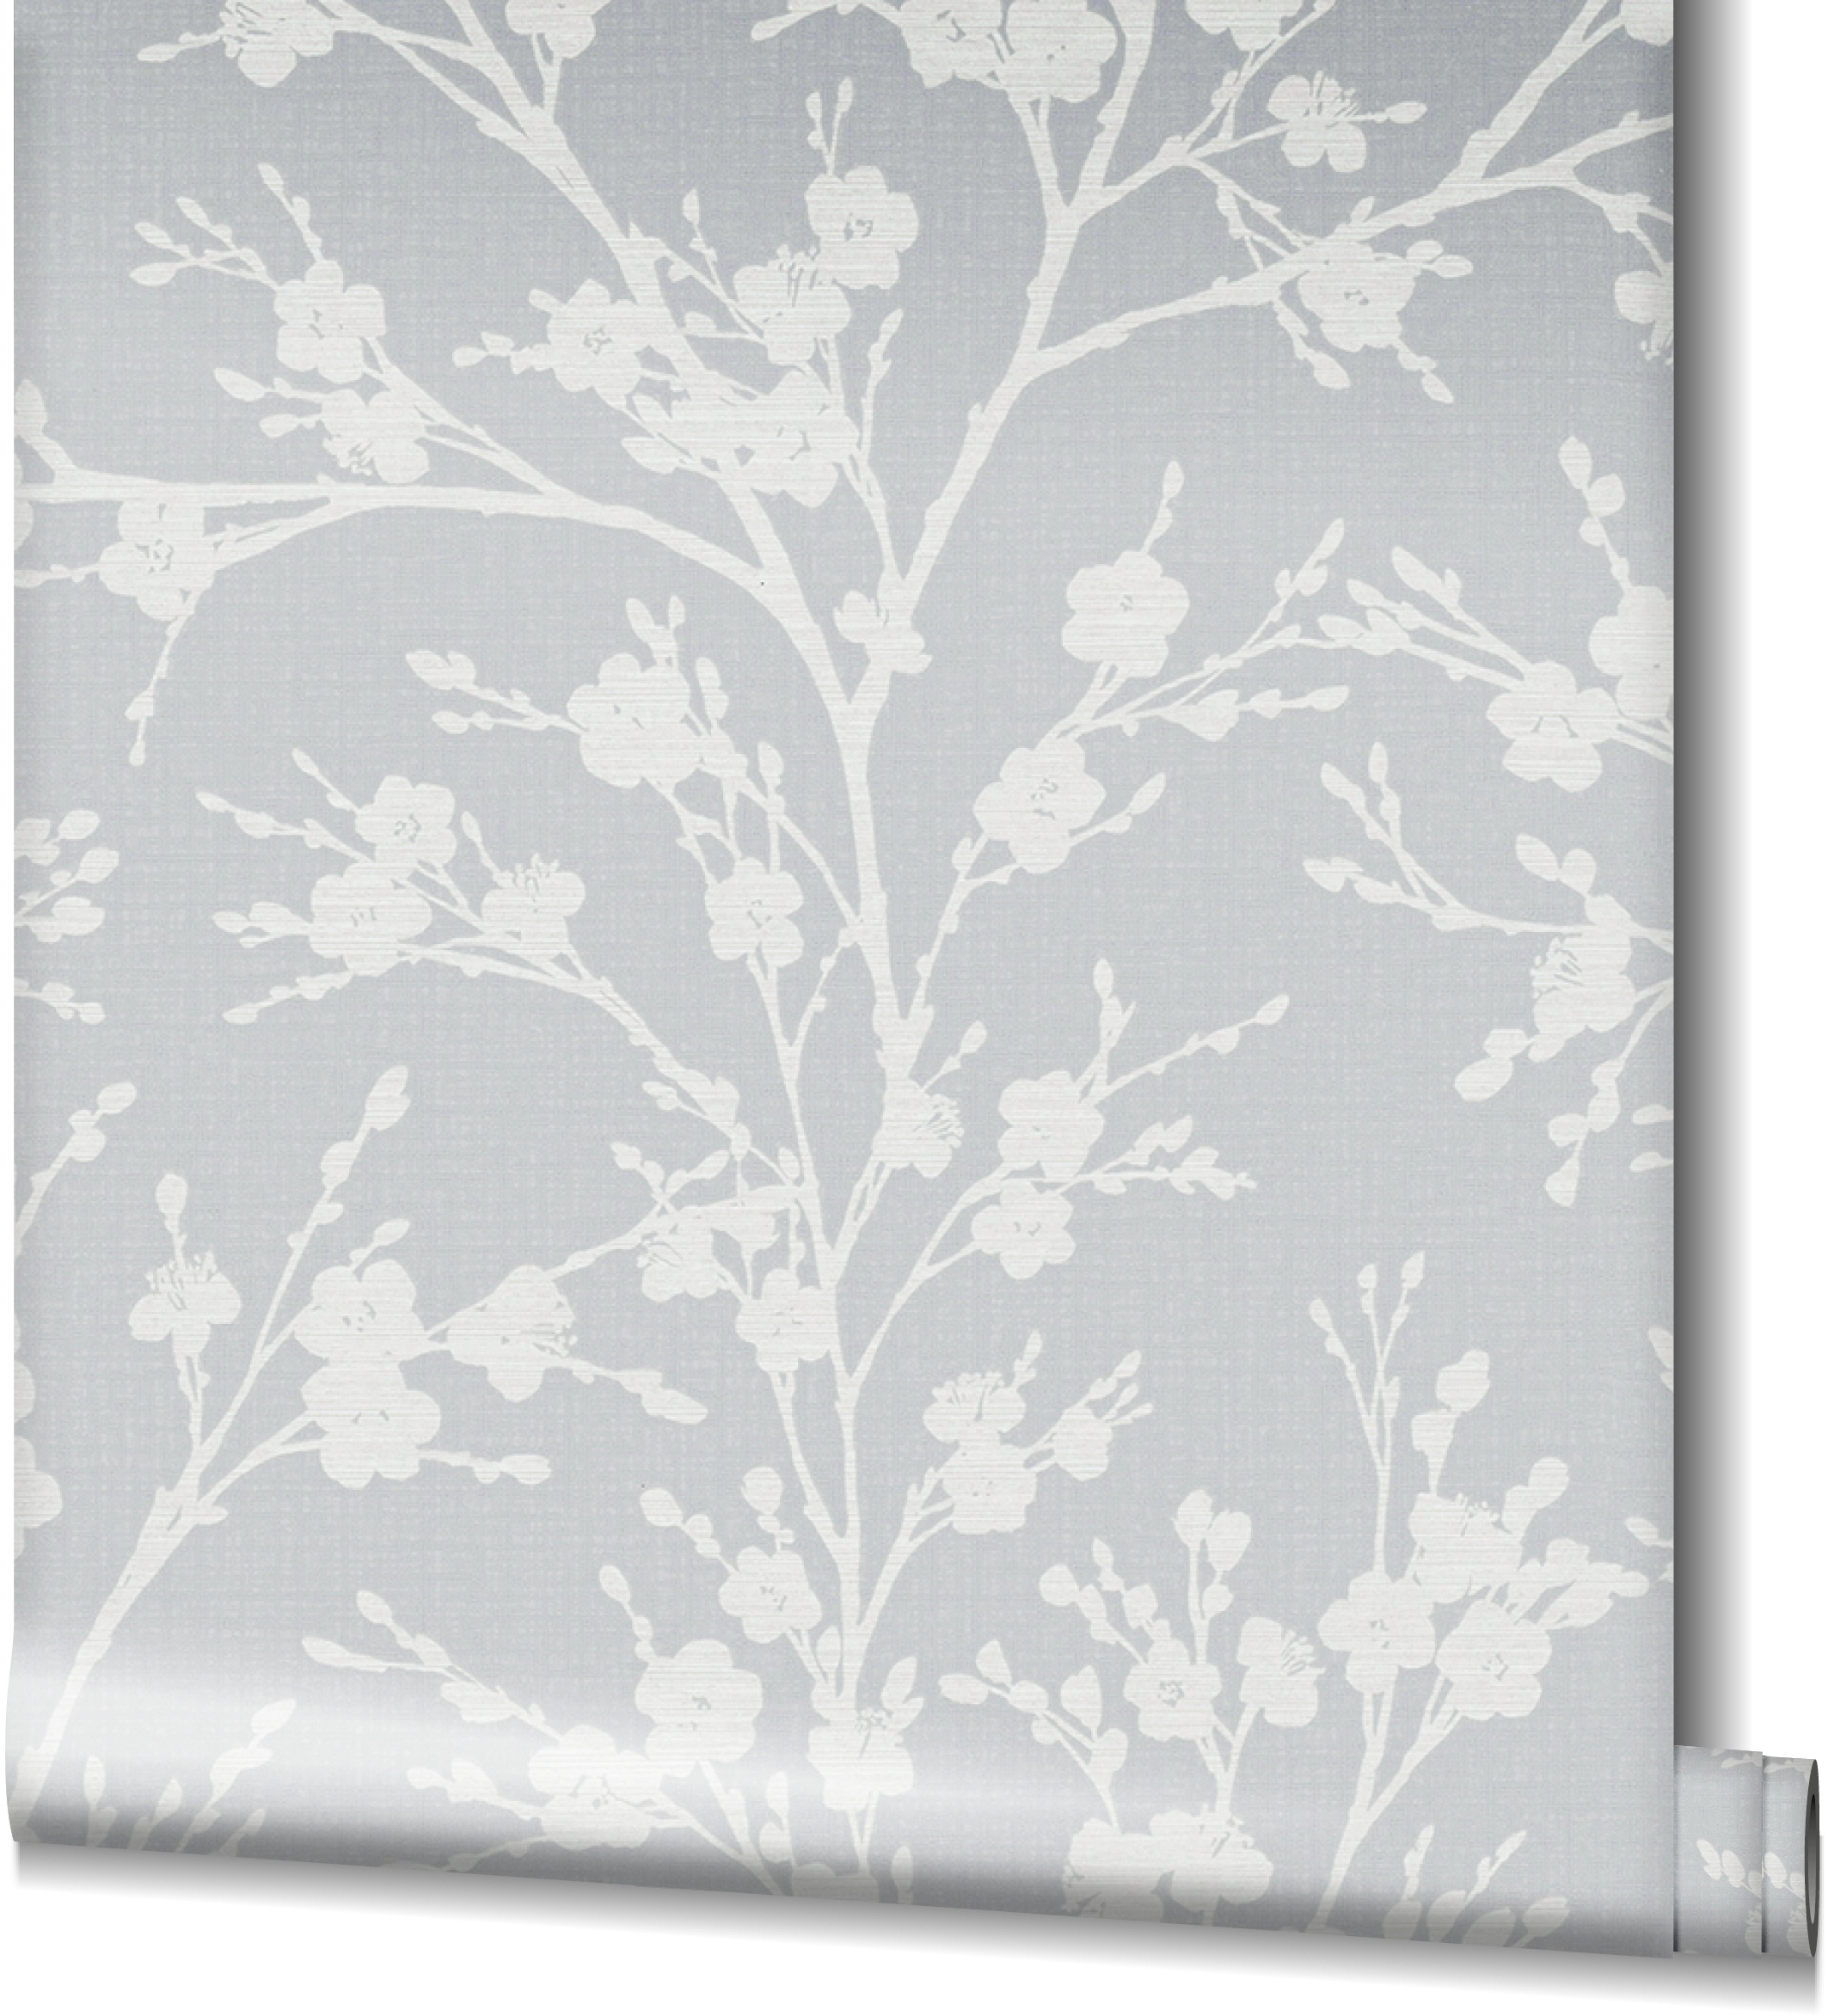 Marburg Vliestapete Ivy Nov Floral Grau-Weiß FSC® kaufen bei OBI